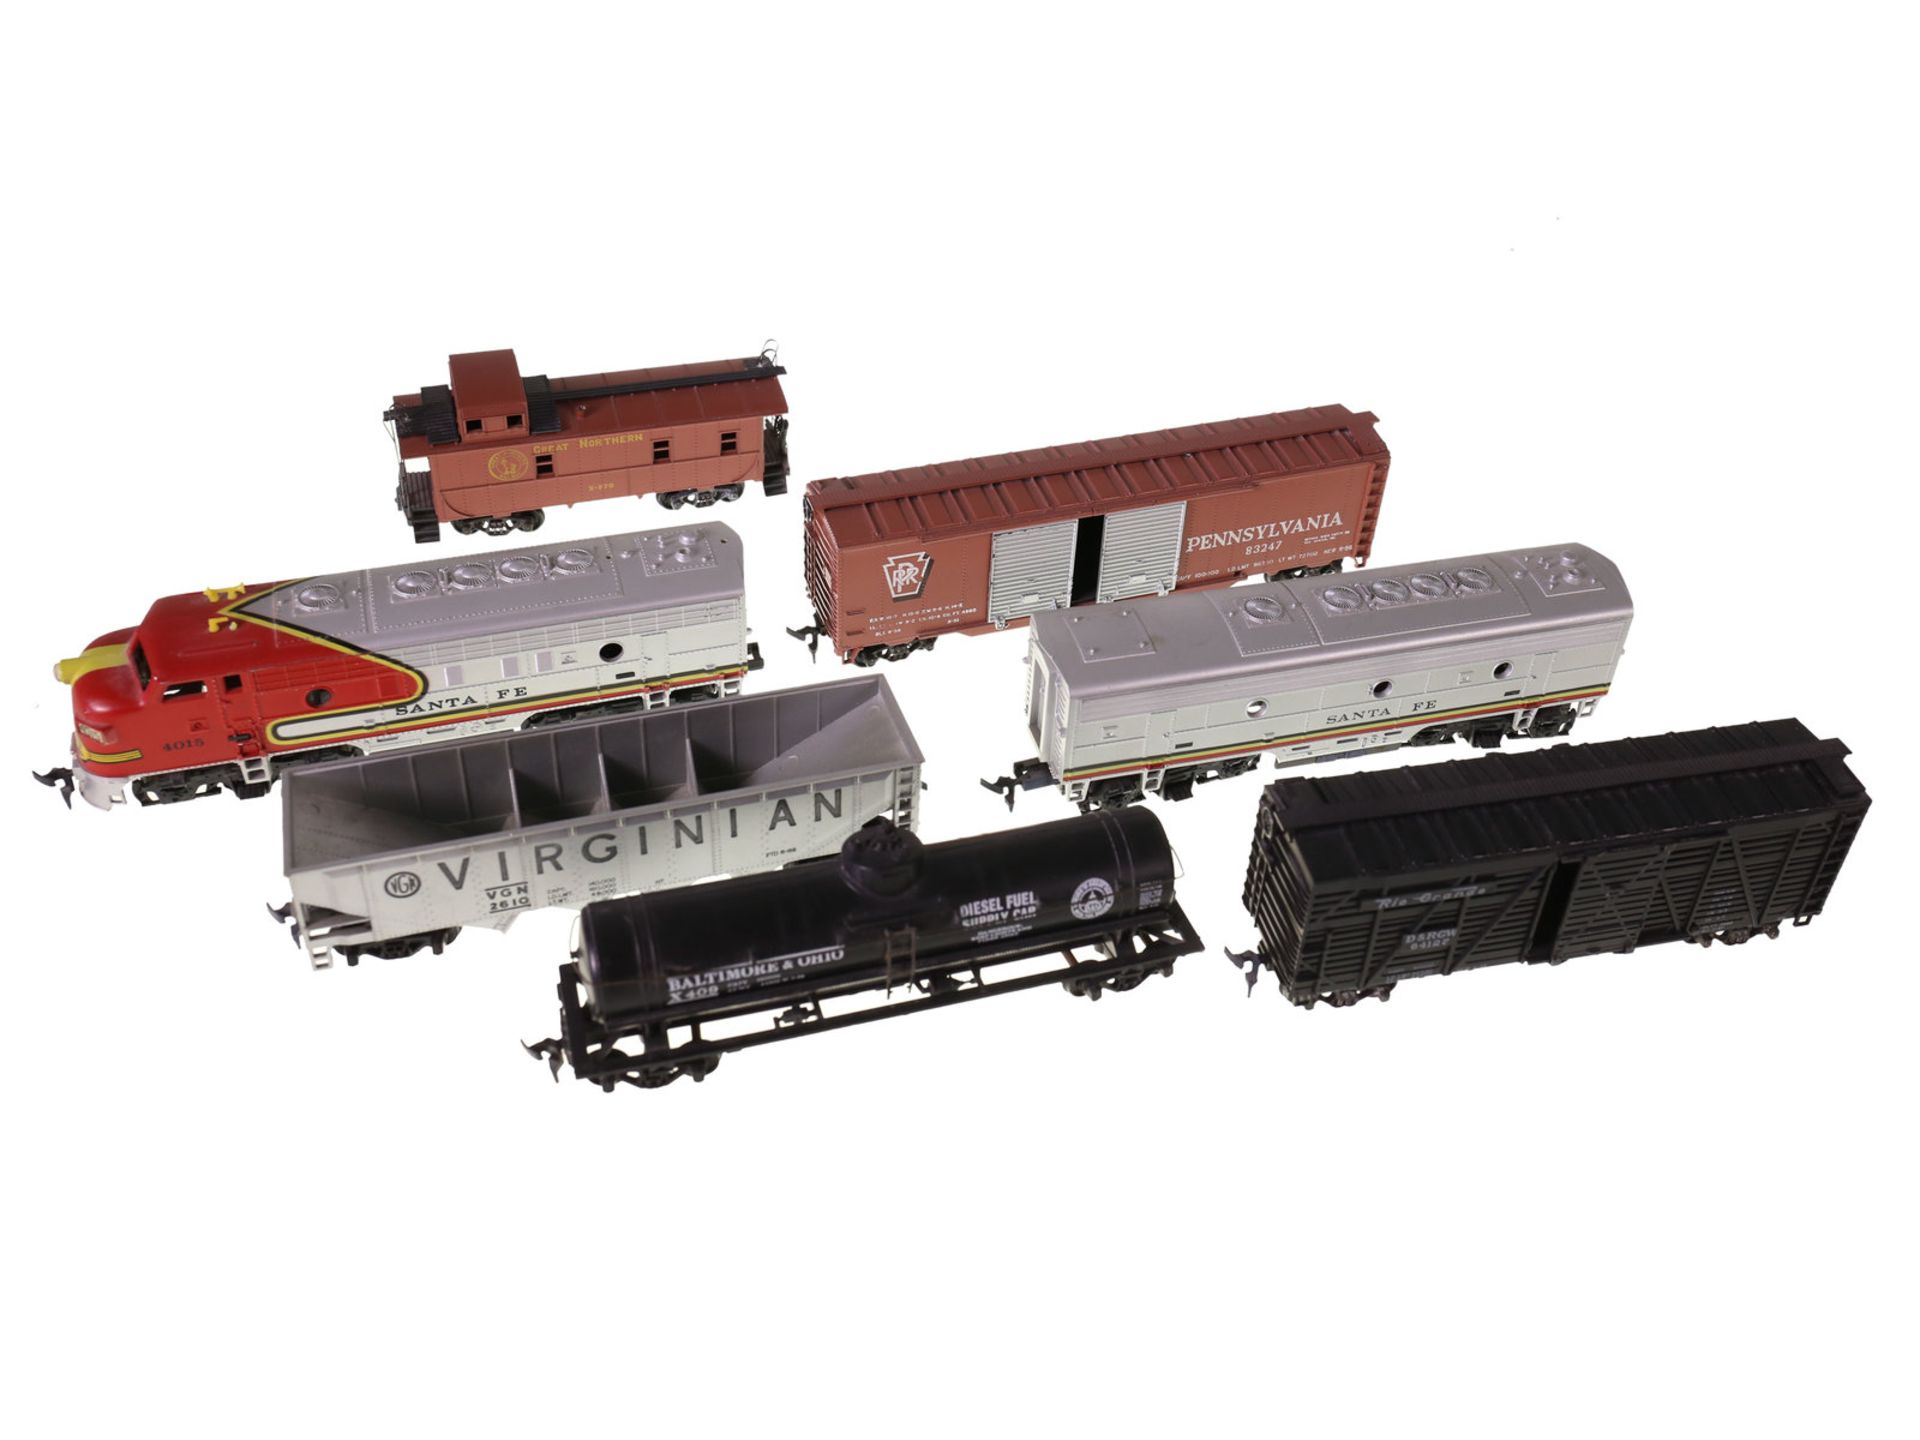 Eisenbahn: Modelleisenbahn, sehr schöne Originale aus den USA, Diesellok "Santa Fe" mit 5 Anhän